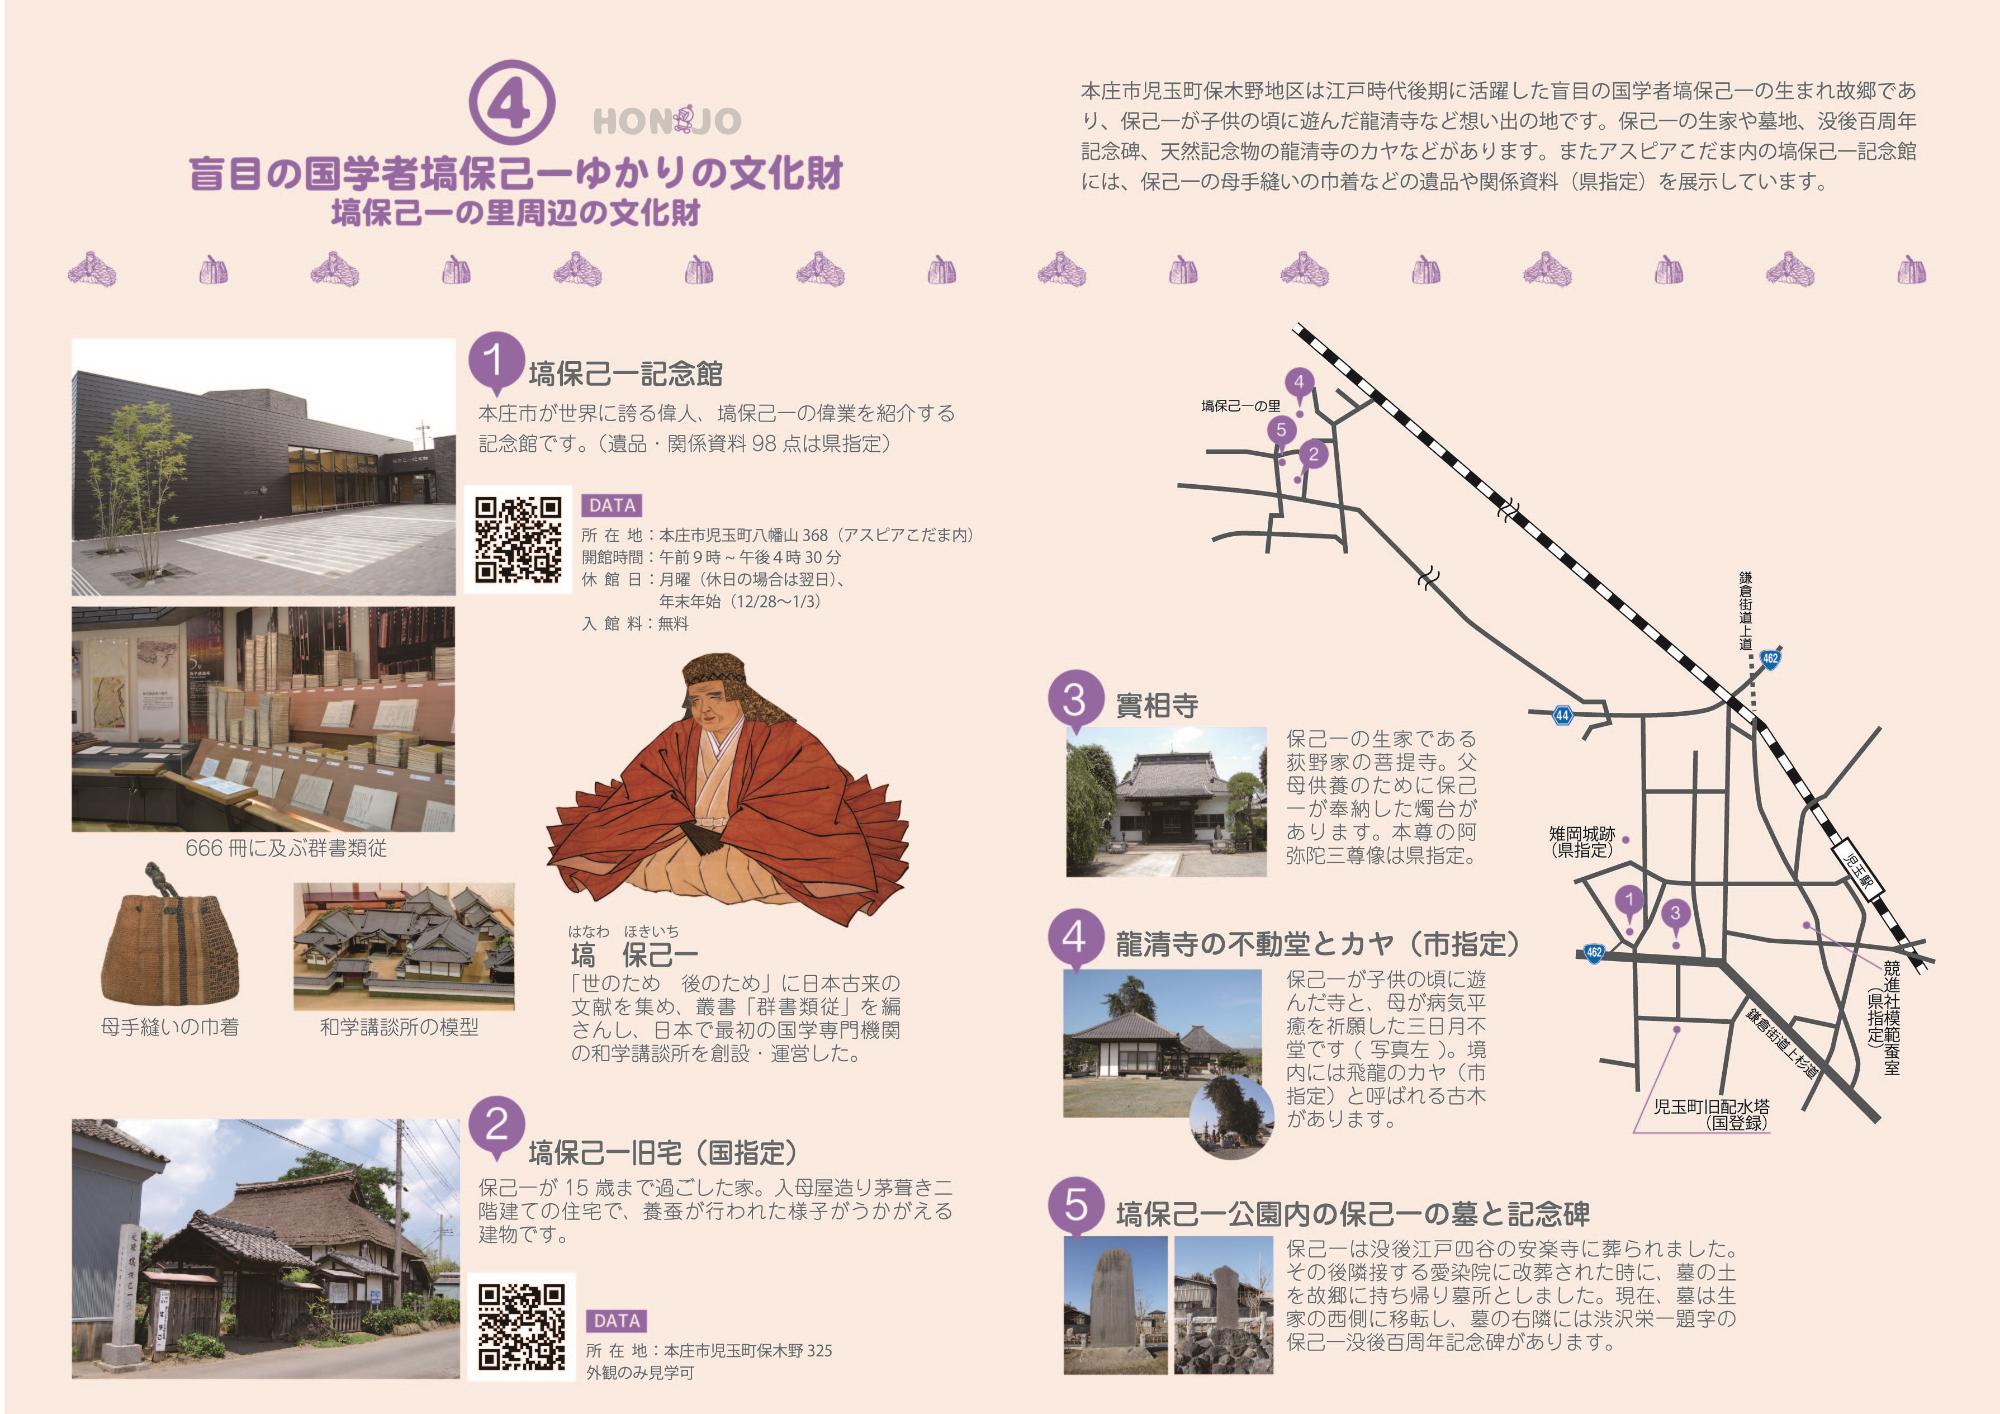 ほんじょう文化財ガイドマップP12-P13